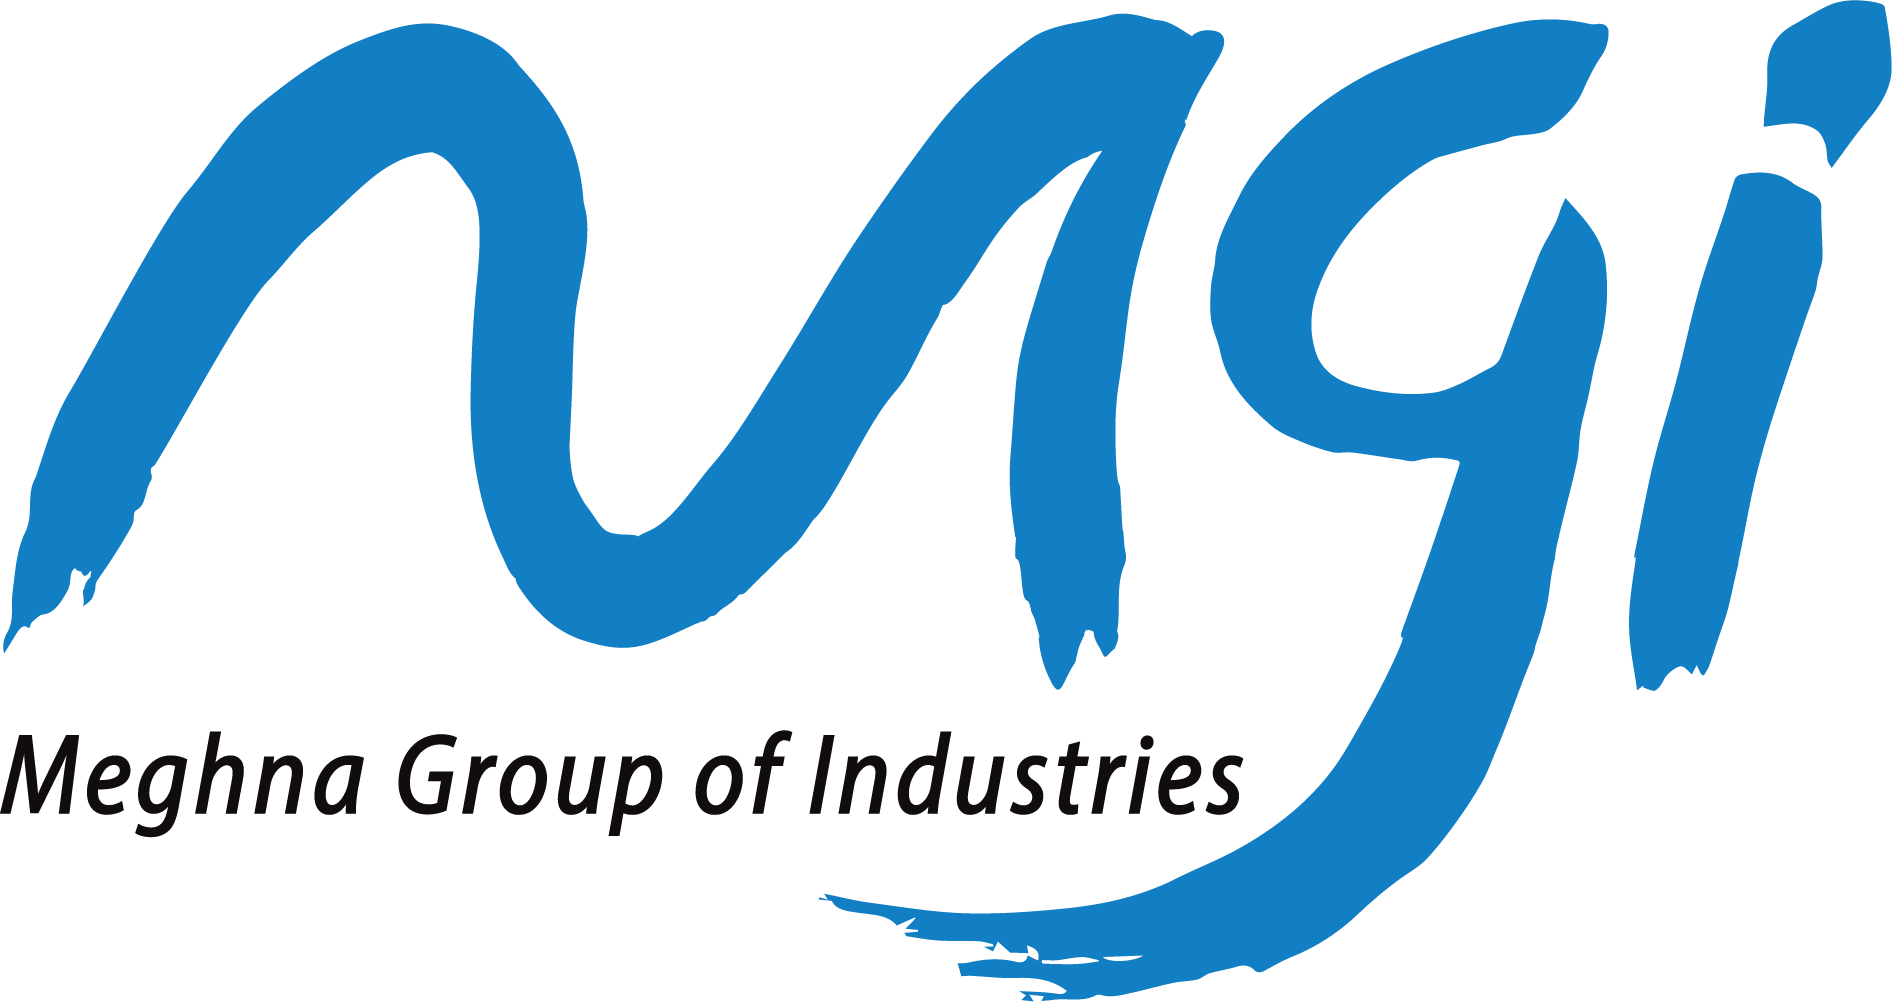 Meghana Group of Industries